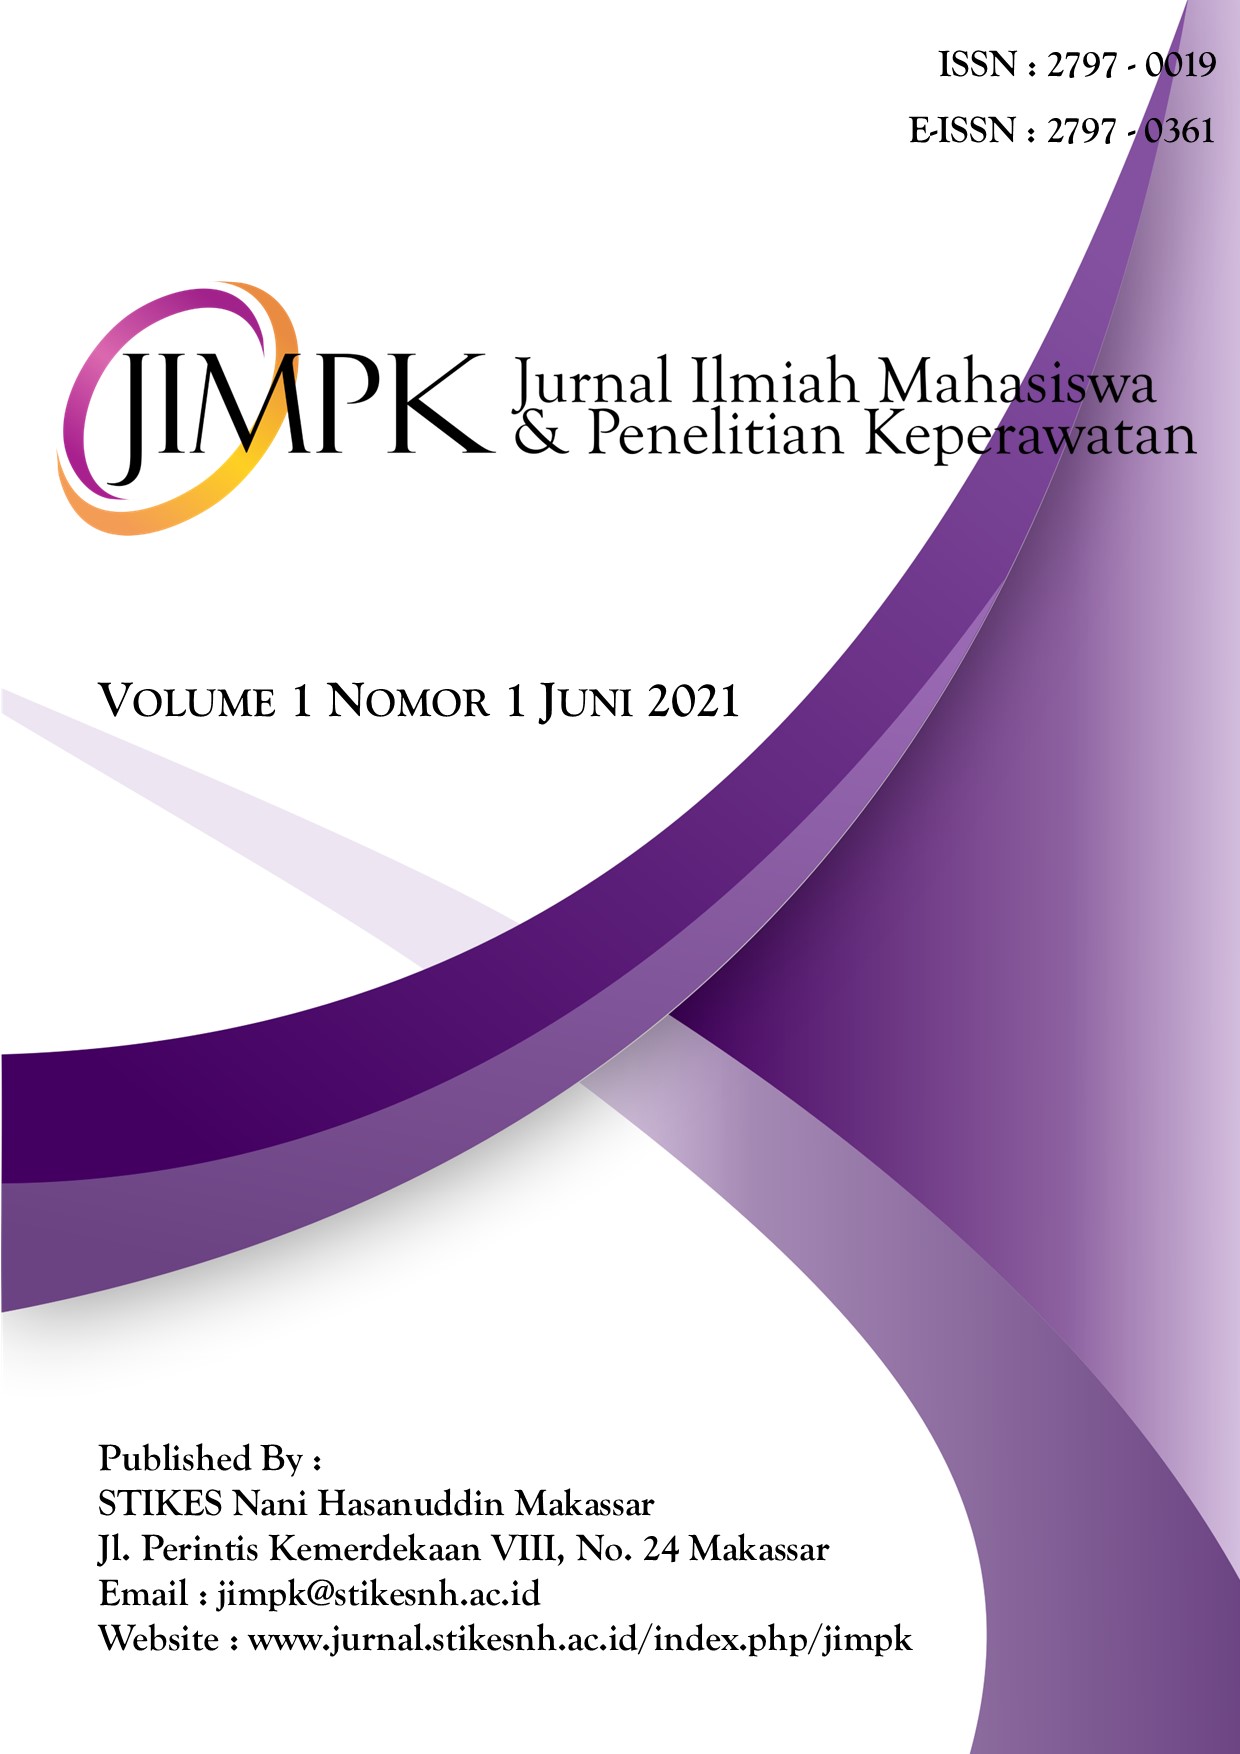 					View Vol. 1 No. 1 (1): Jurnal Ilmiah Mahasiswa & Penelitian Keperawatan
				